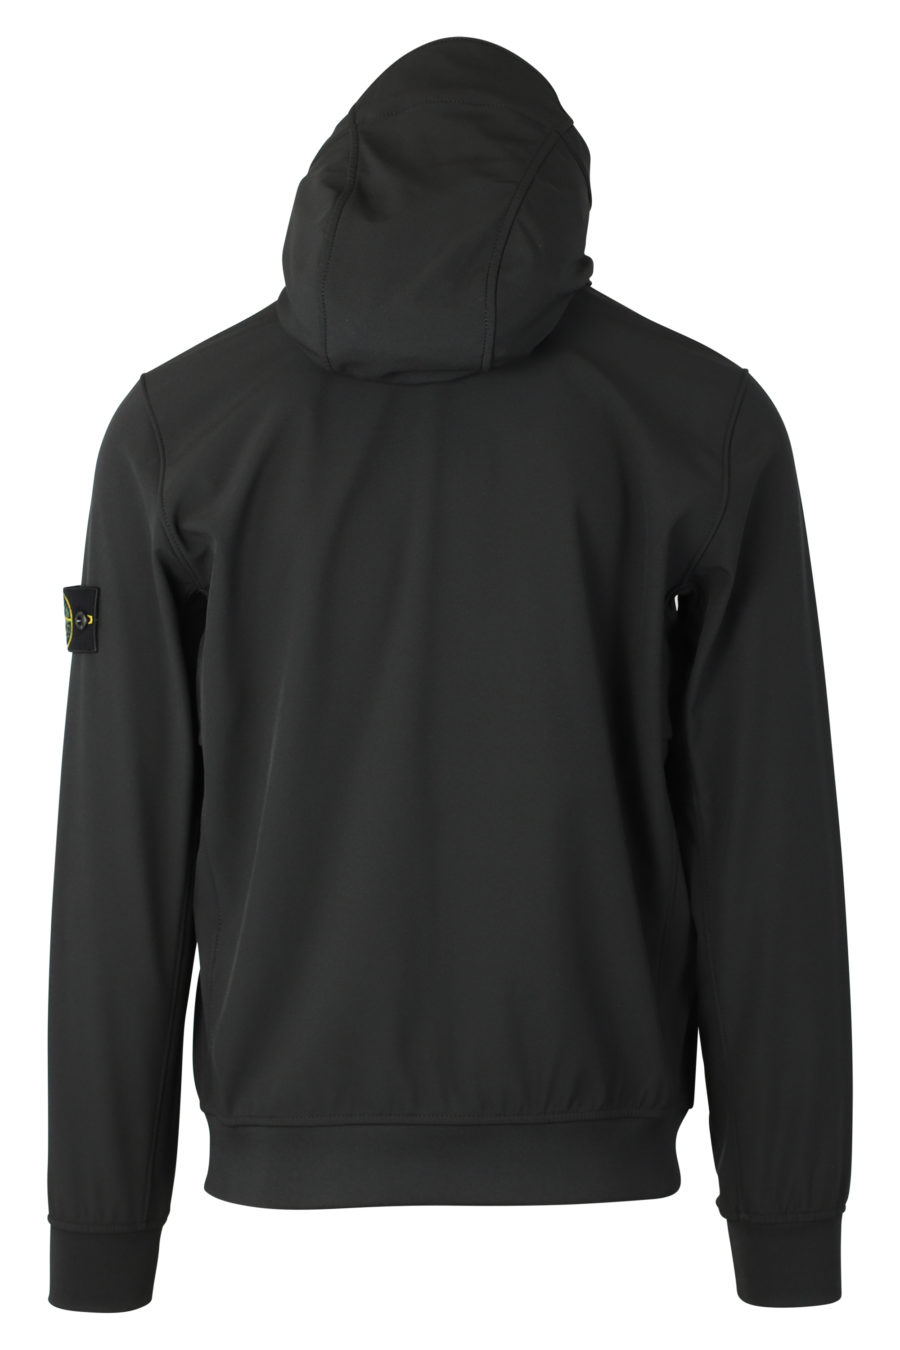 Schwarze Jacke mit Kapuze und Logoaufnäher - IMG 9320